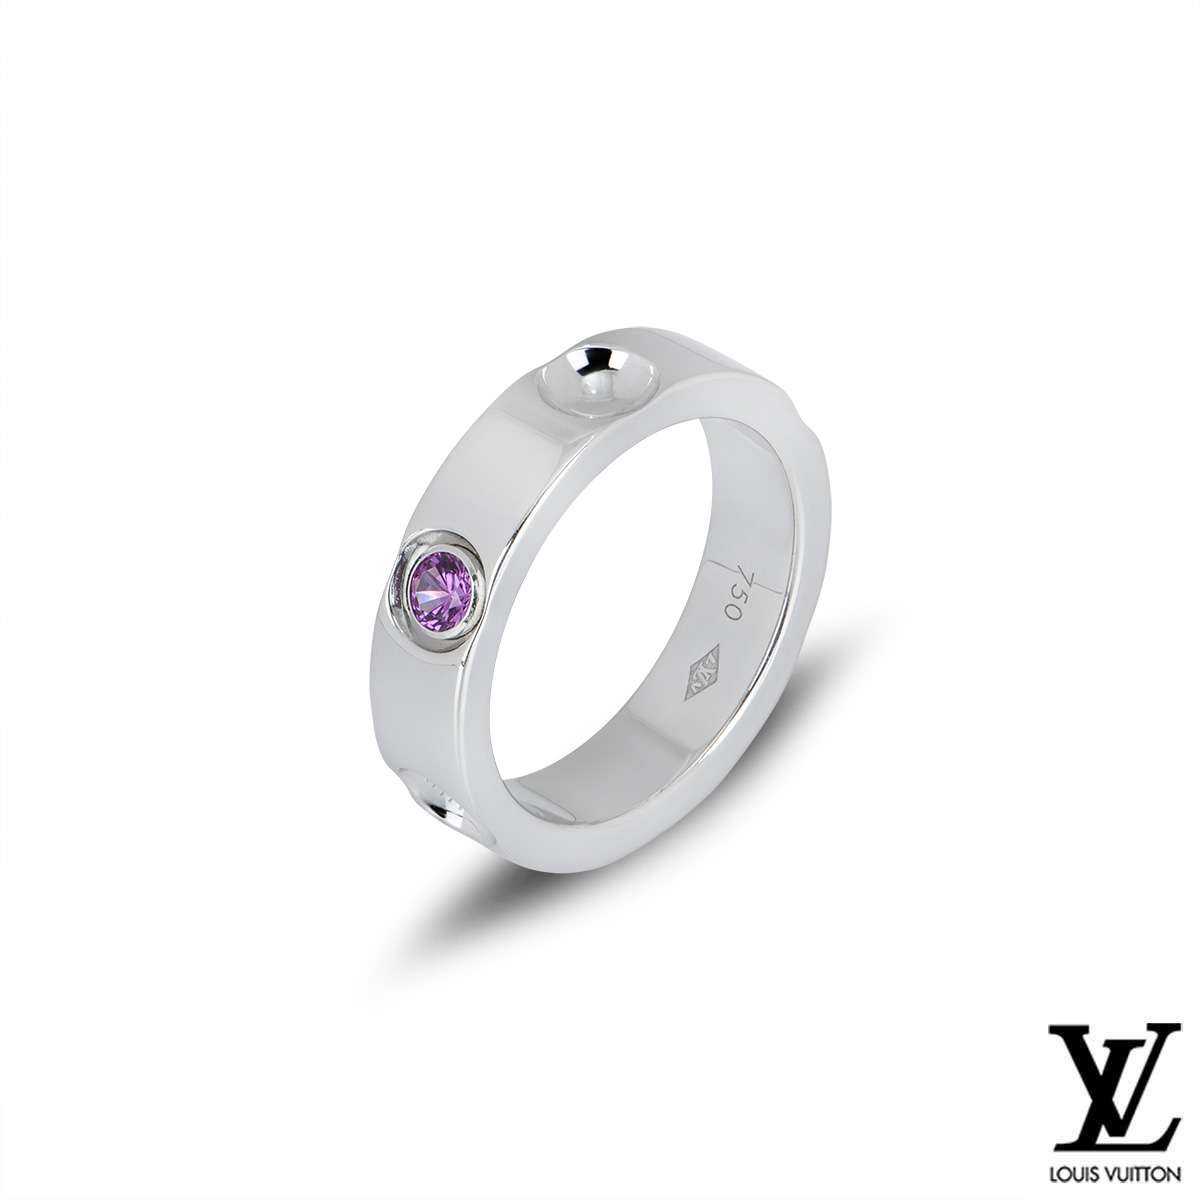 Authentic LOUIS VUITTON Petite Berg Empreinte Ring #260-006-004-9810